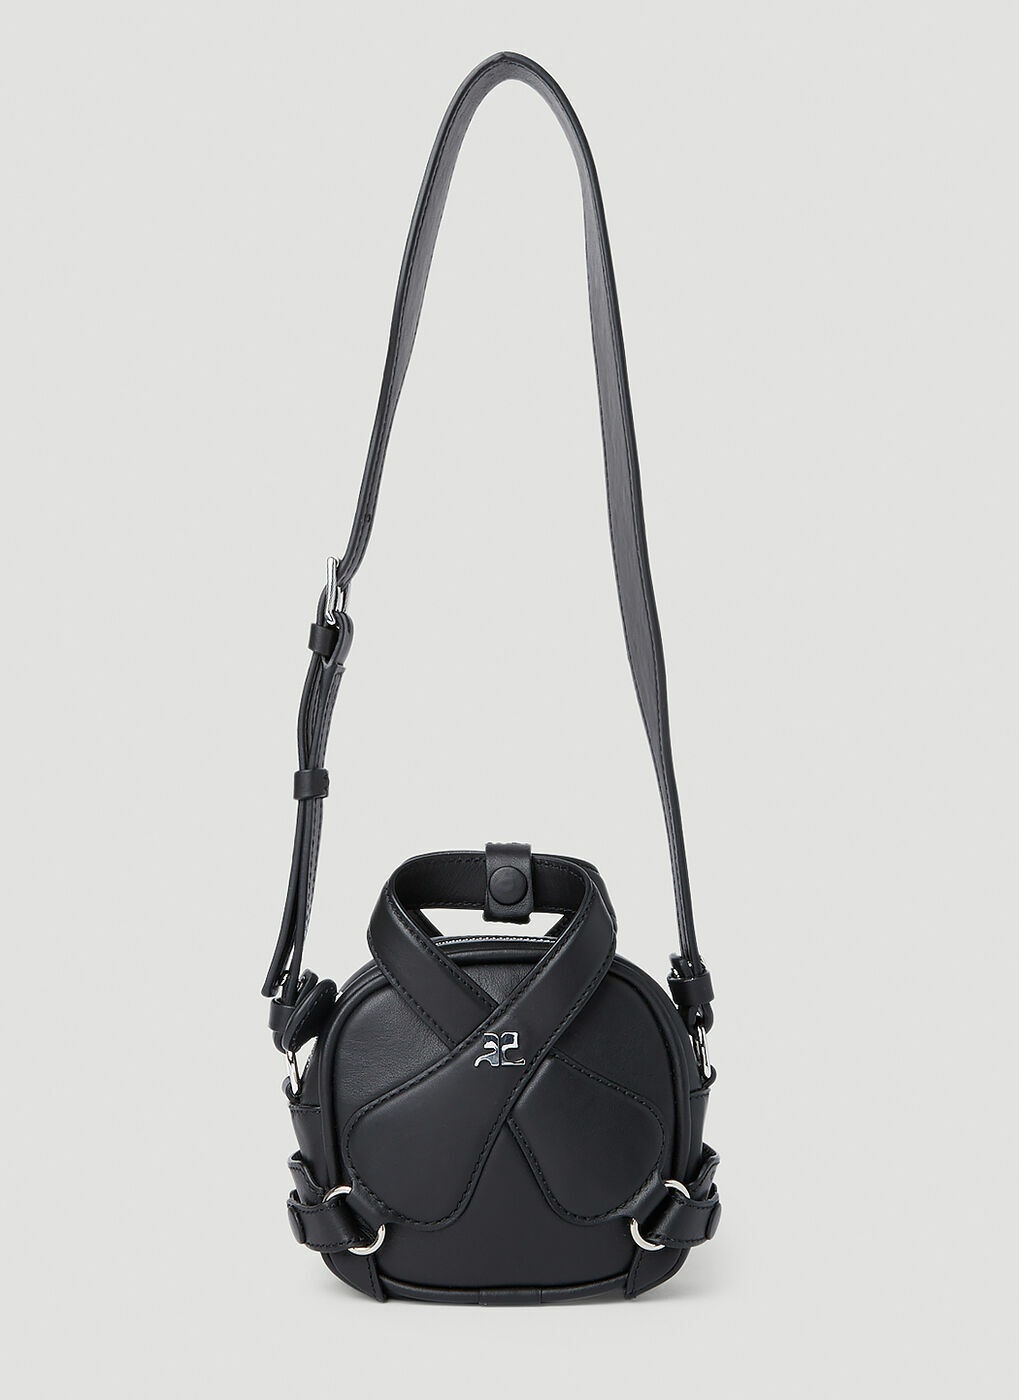 X Loop Baguette Bag in Black Leather